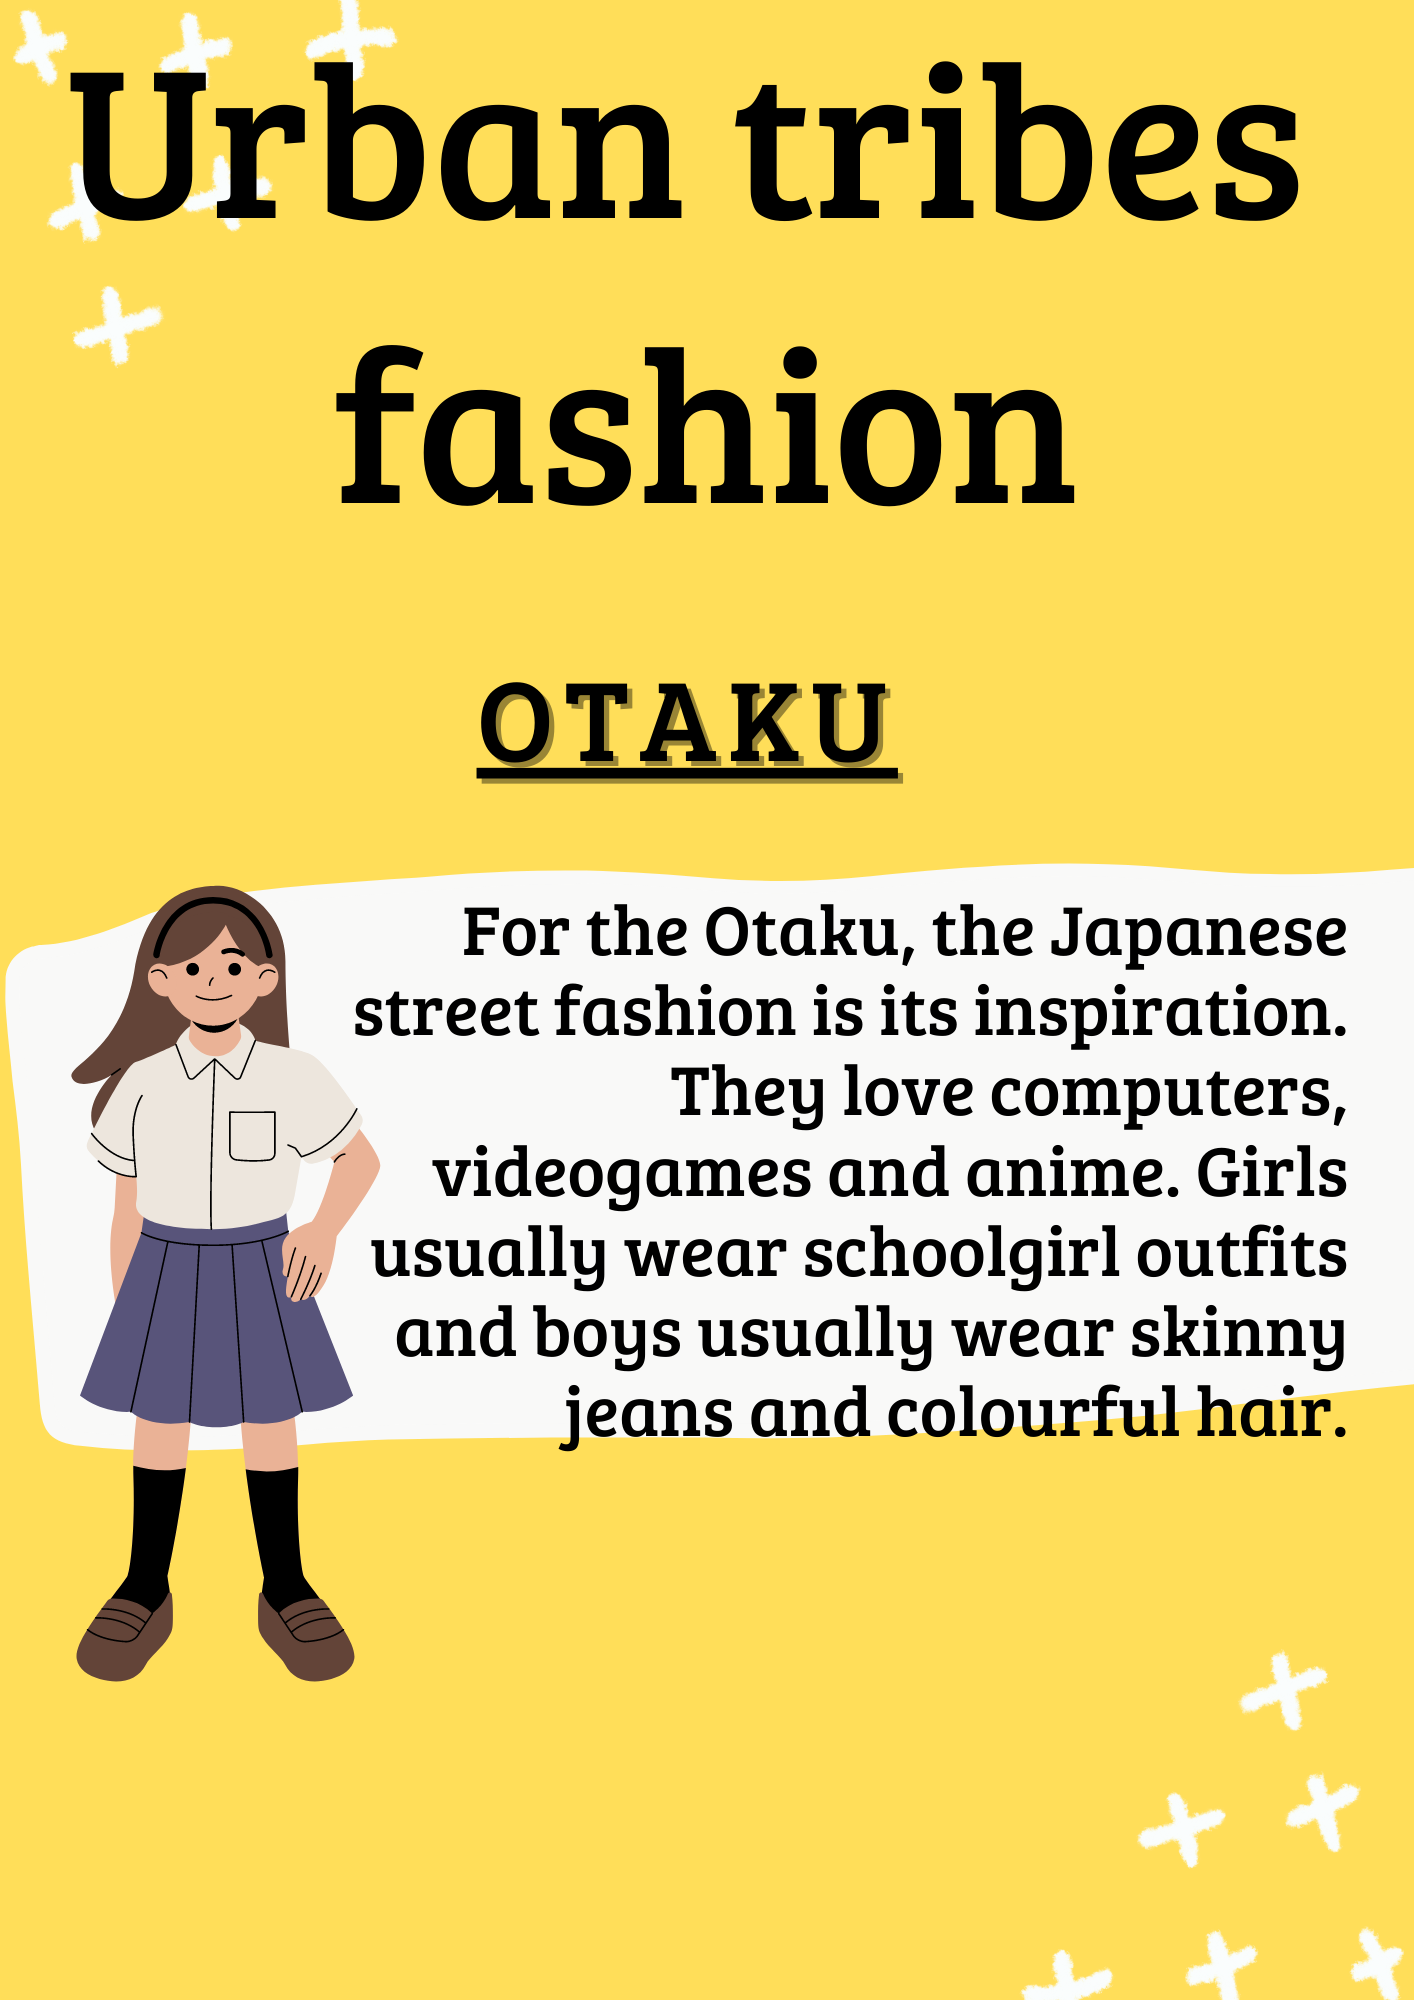 La imagen tiene fondo amarillo y letra en negro. El título de la imagen es Urban tribes fashion y debajo el subtítulo “otaku”. Aparece una breve descripción a la derecha y a la izquierda la imagen de una chica con uniforme escolar.